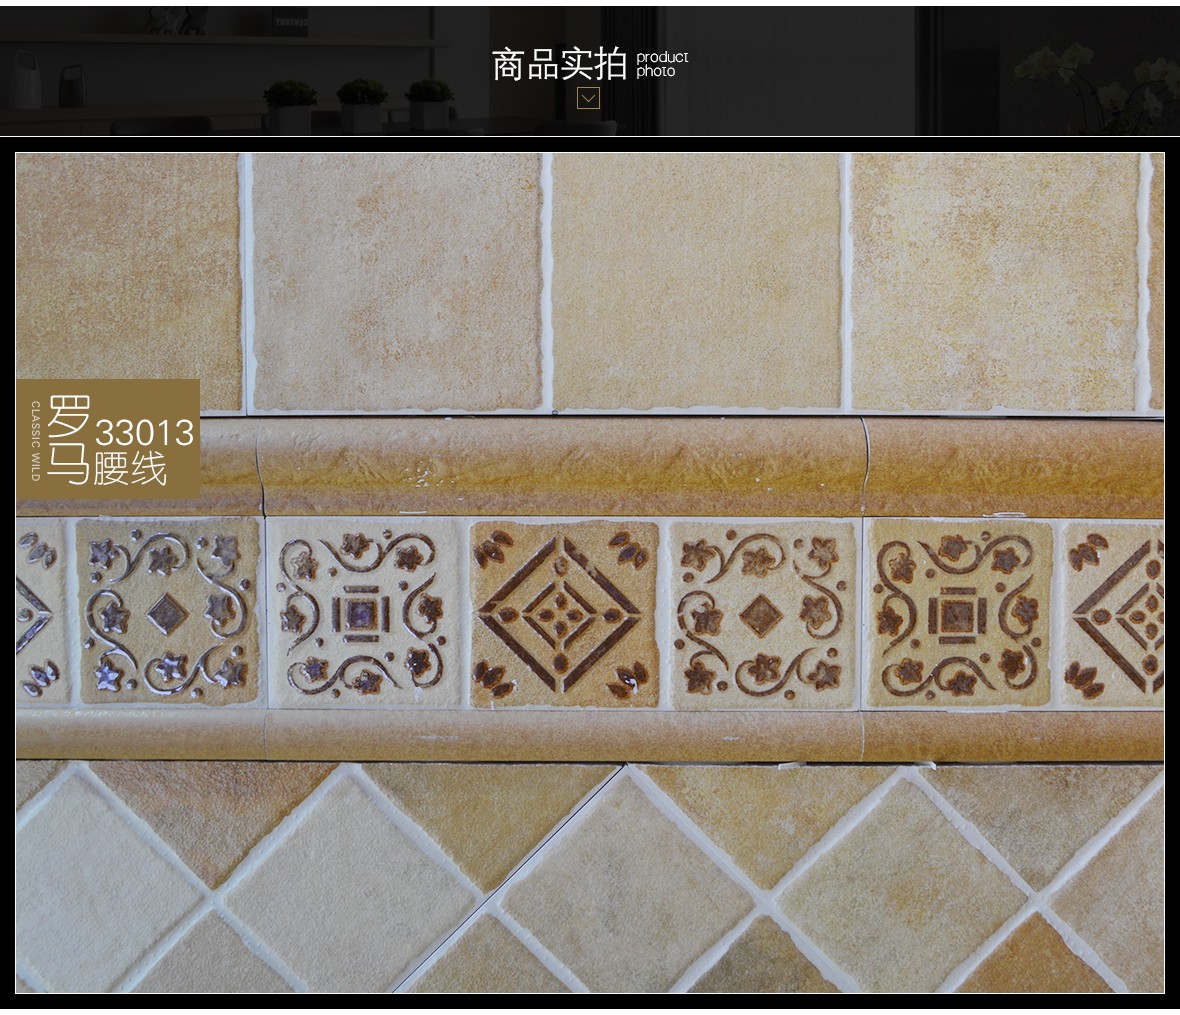 罗马磁砖 33013型号环保瓷质腰线砖 厨房卫生间瓷砖内墙砖腰线砖实拍